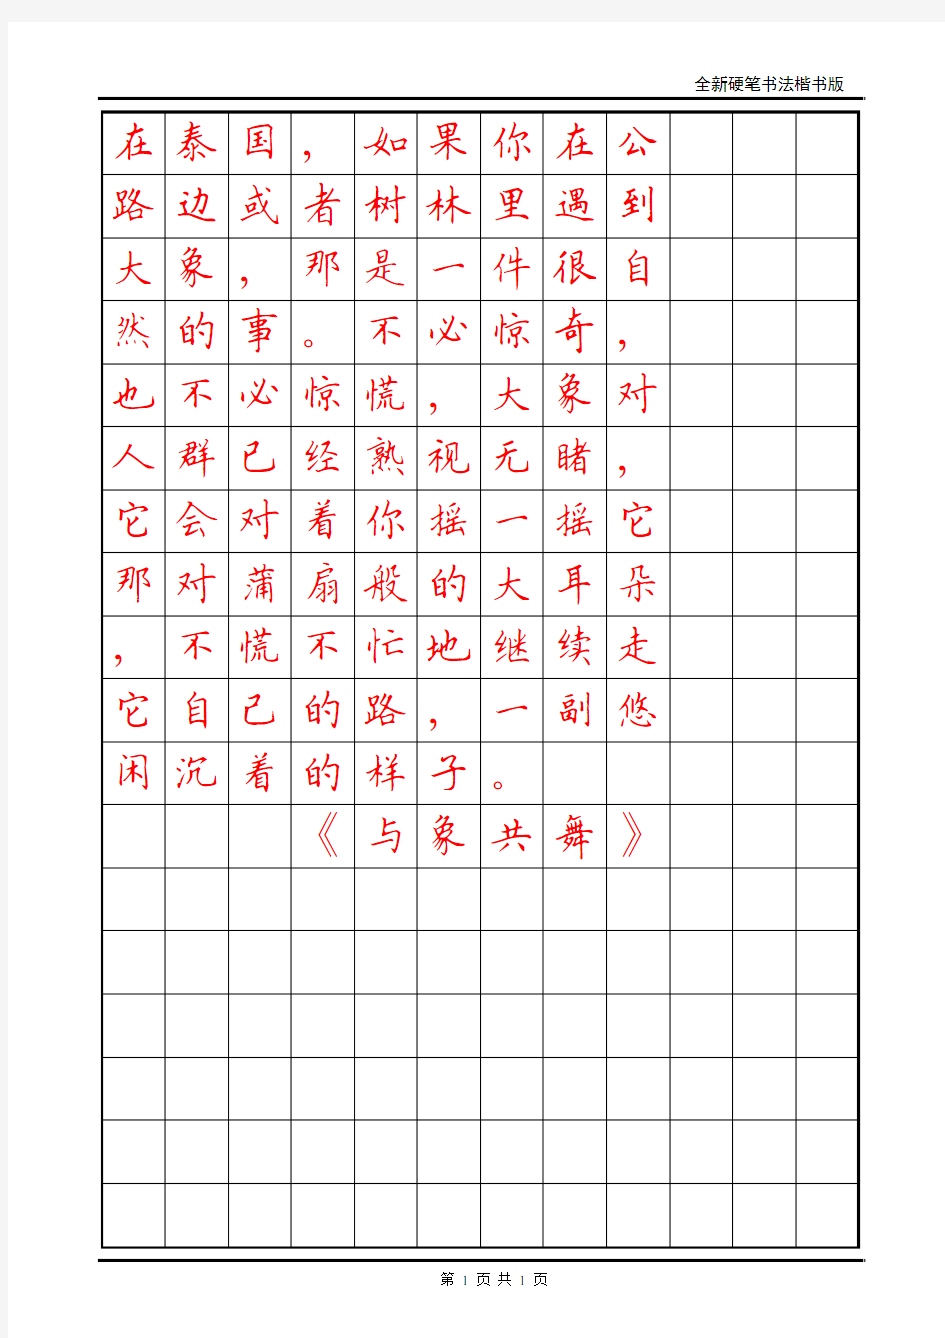 2015年5月江苏省书法等级考试硬笔书法_4—5级_样卷ABCD